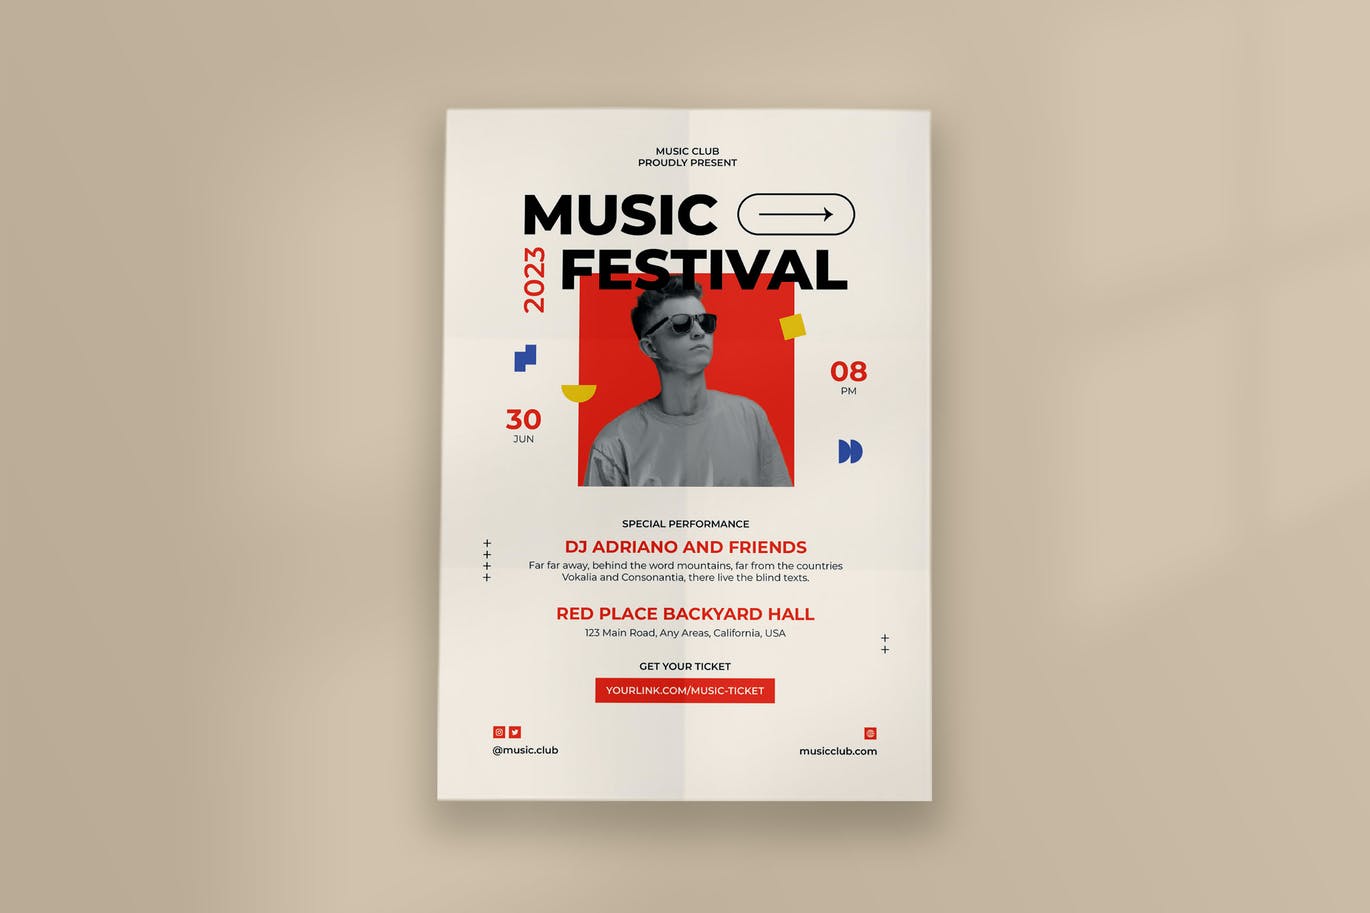 现代音乐节传单模板 Modern Music Festival Flyer Template 设计素材 第1张